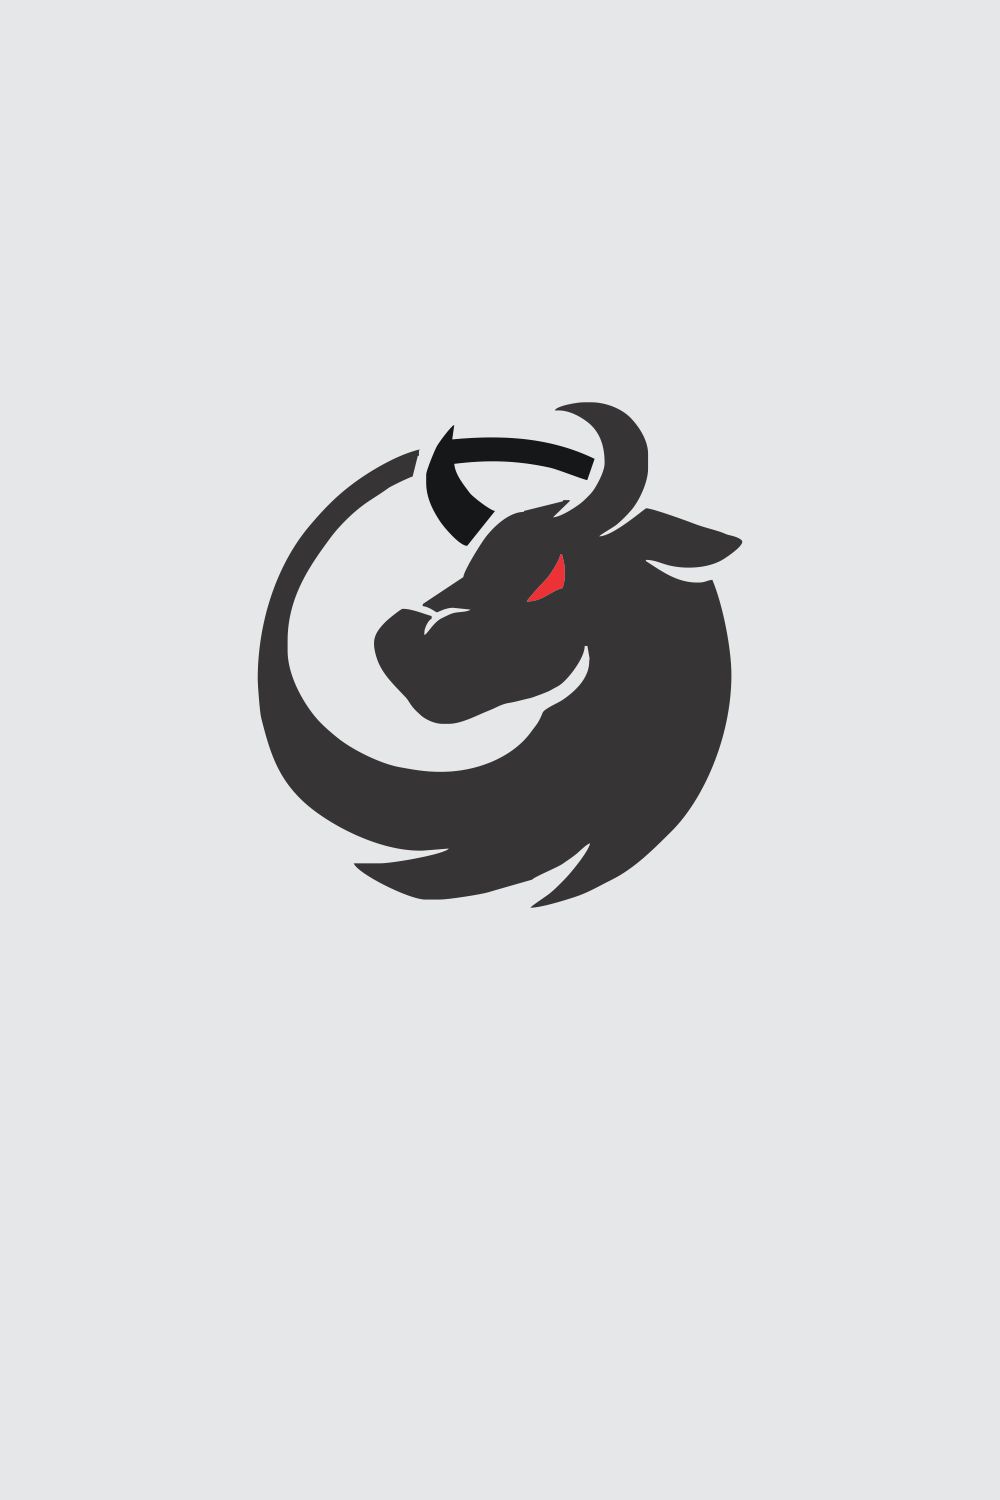 Bull Logo pinterest preview image.